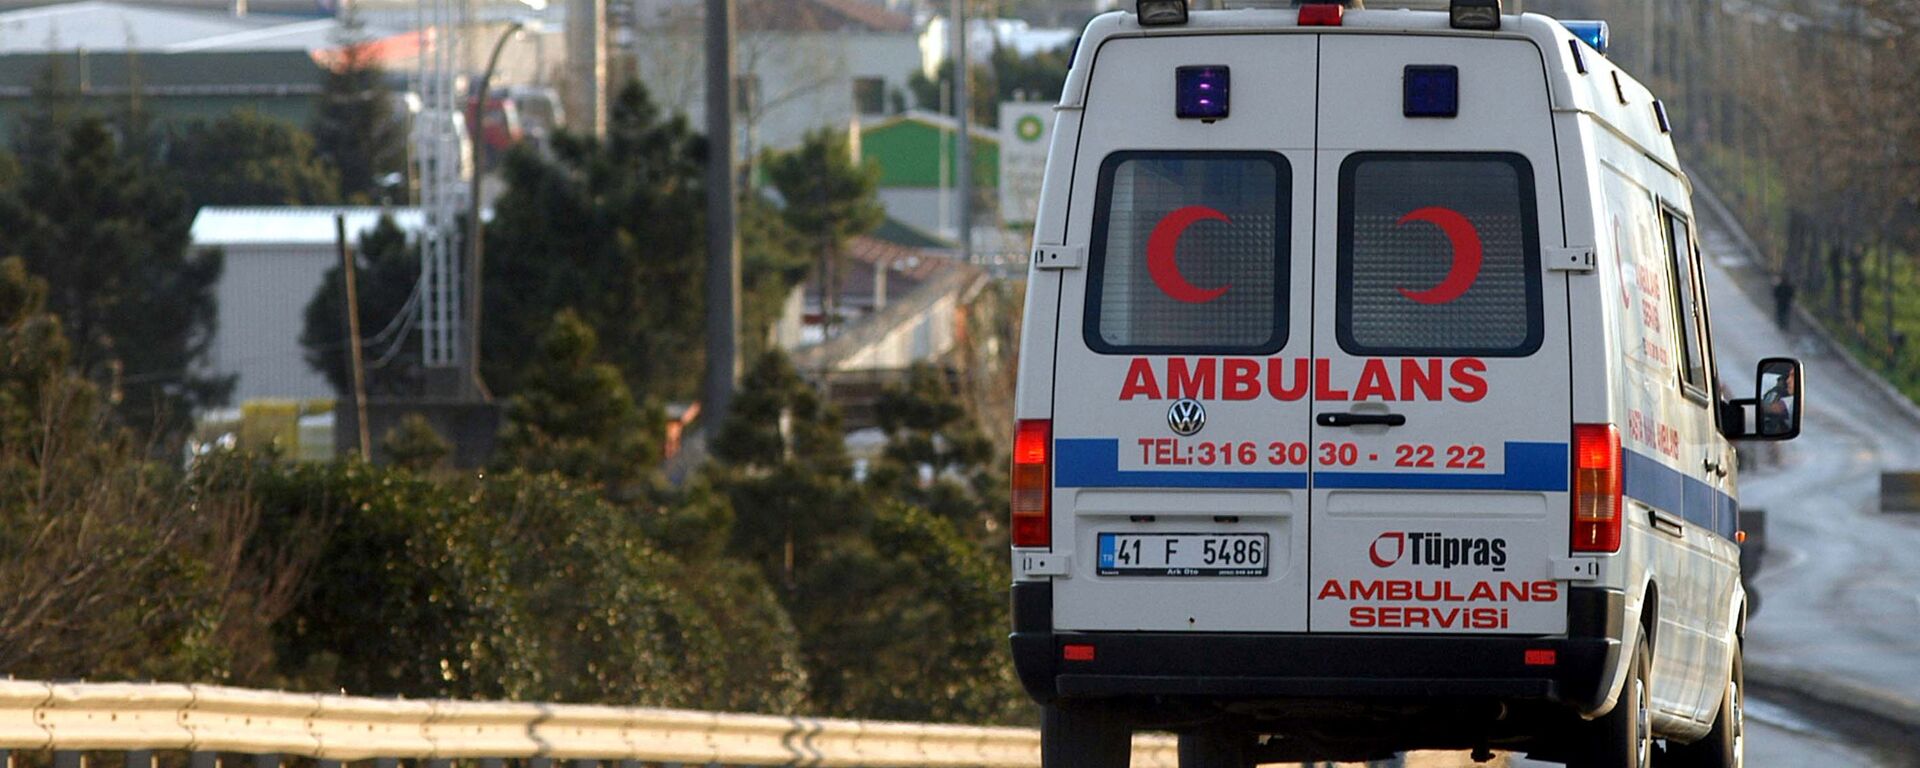 Una ambulancia turca (archivo) - Sputnik Mundo, 1920, 27.07.2021